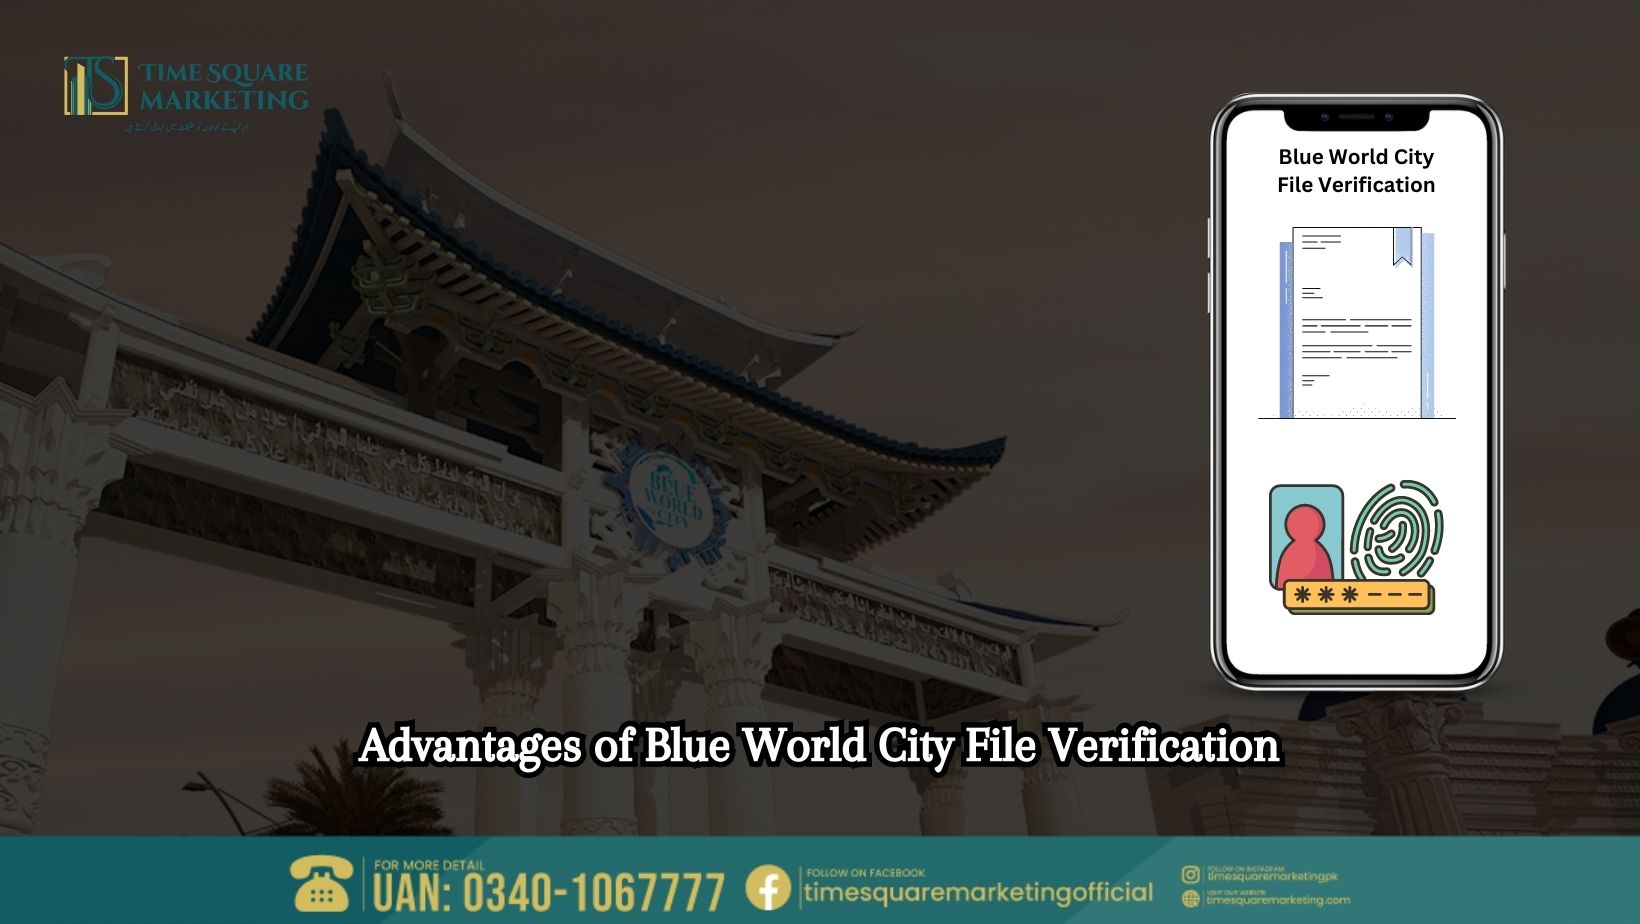 Advantages of Blue World City File Verification